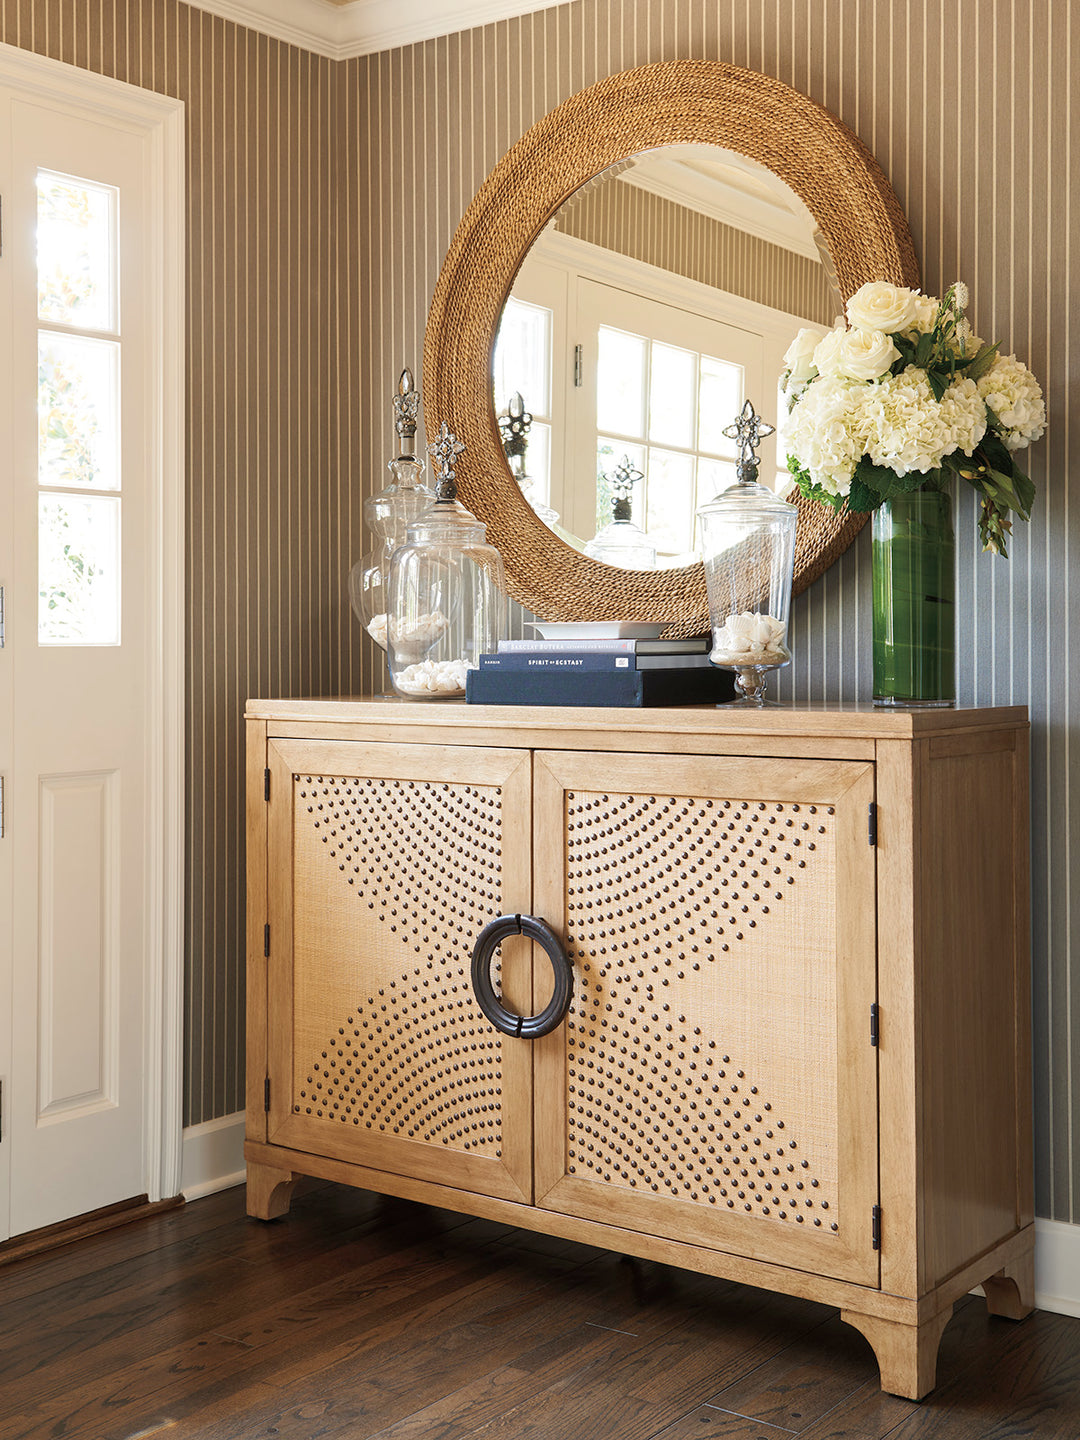 American Home Furniture | Barclay Butera  - Newport La Jolla Woven Round Mirror